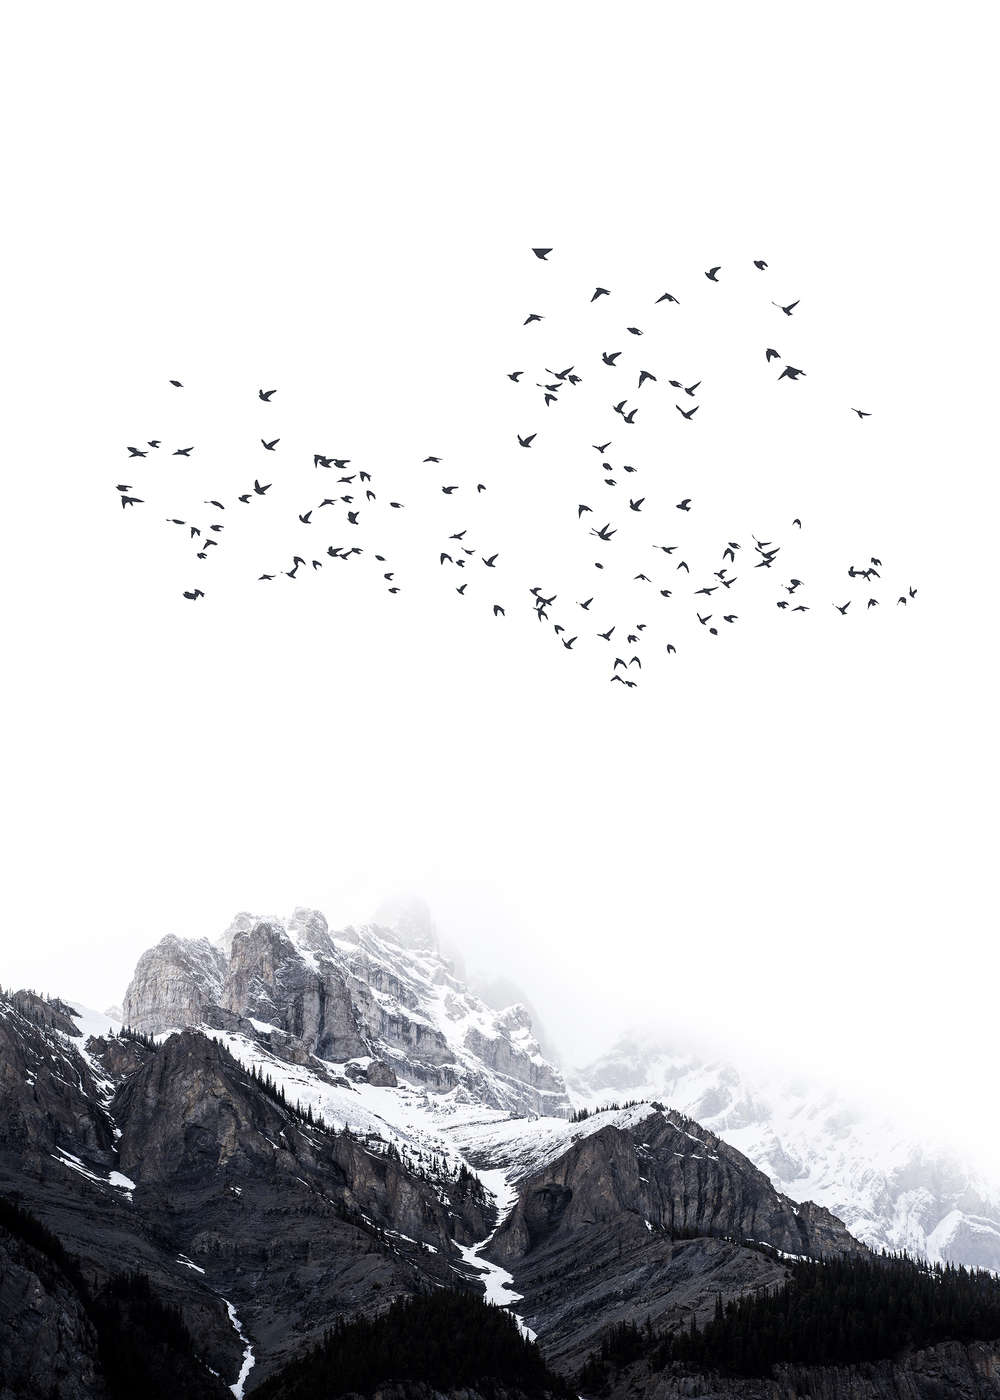             Landschap Behang besneeuwde bergen & trekvogels
        